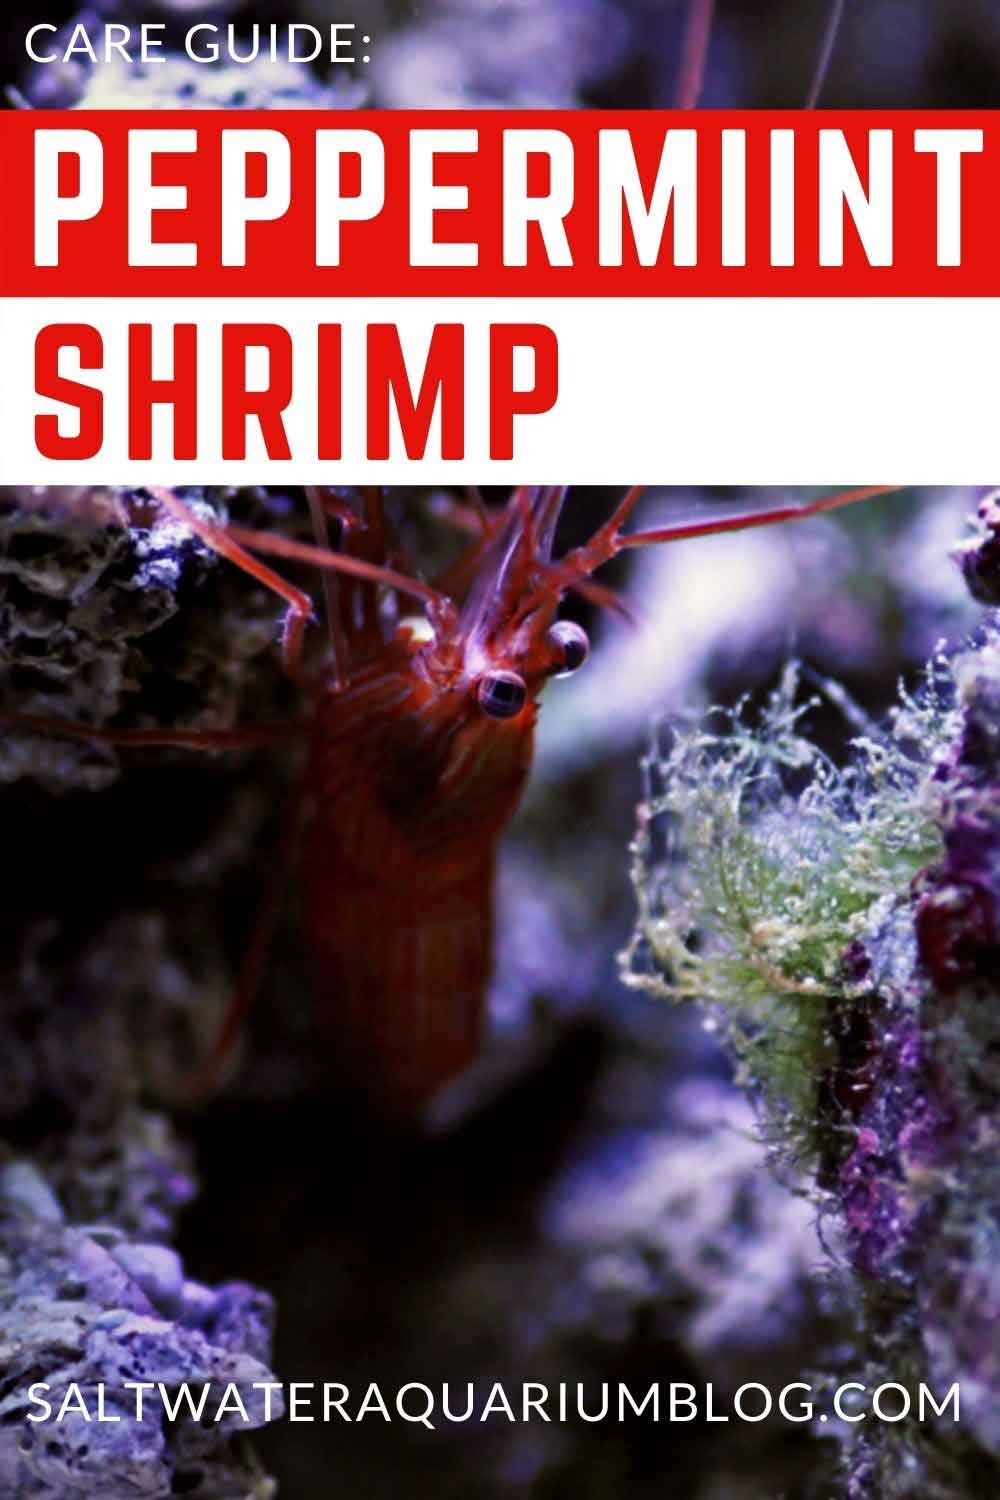 Peppermint shrimp care guide